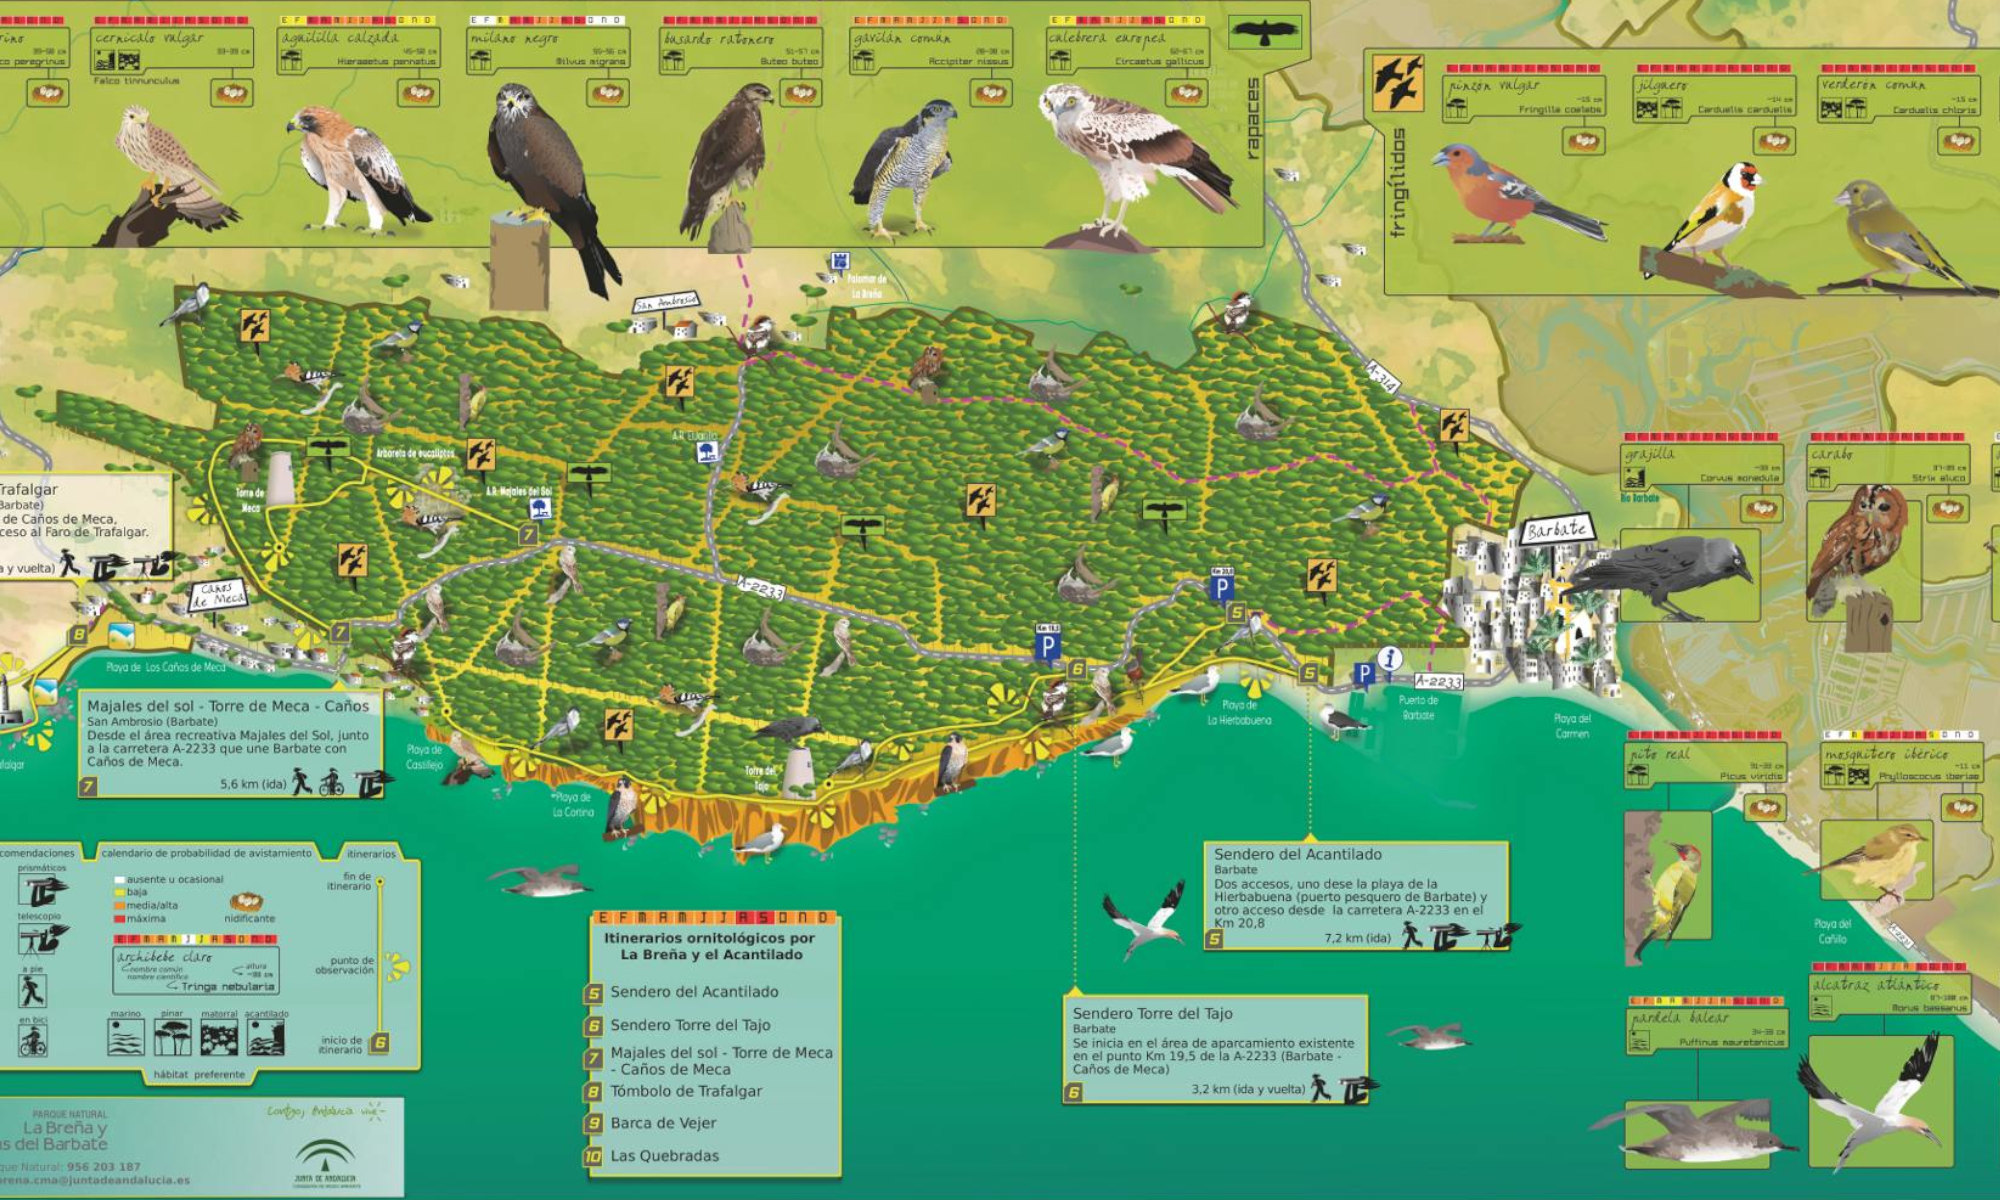 Mapa-guía ornitológico del Parque Natural Breña y Marismas del Barbate